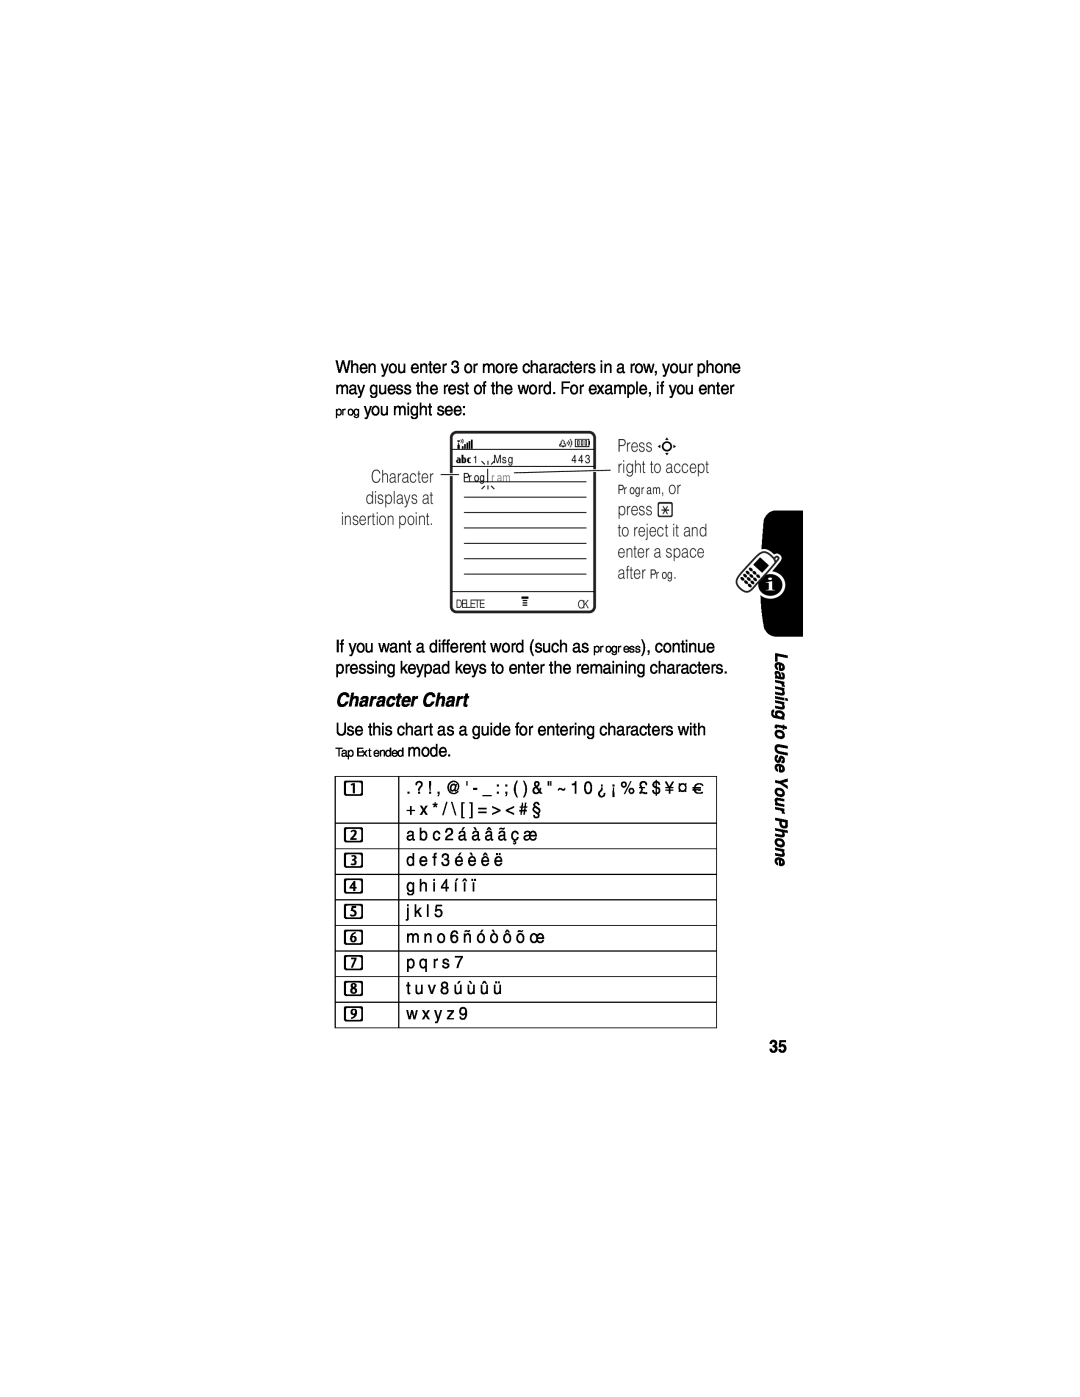 Motorola V555 manual Character Chart, displays at 